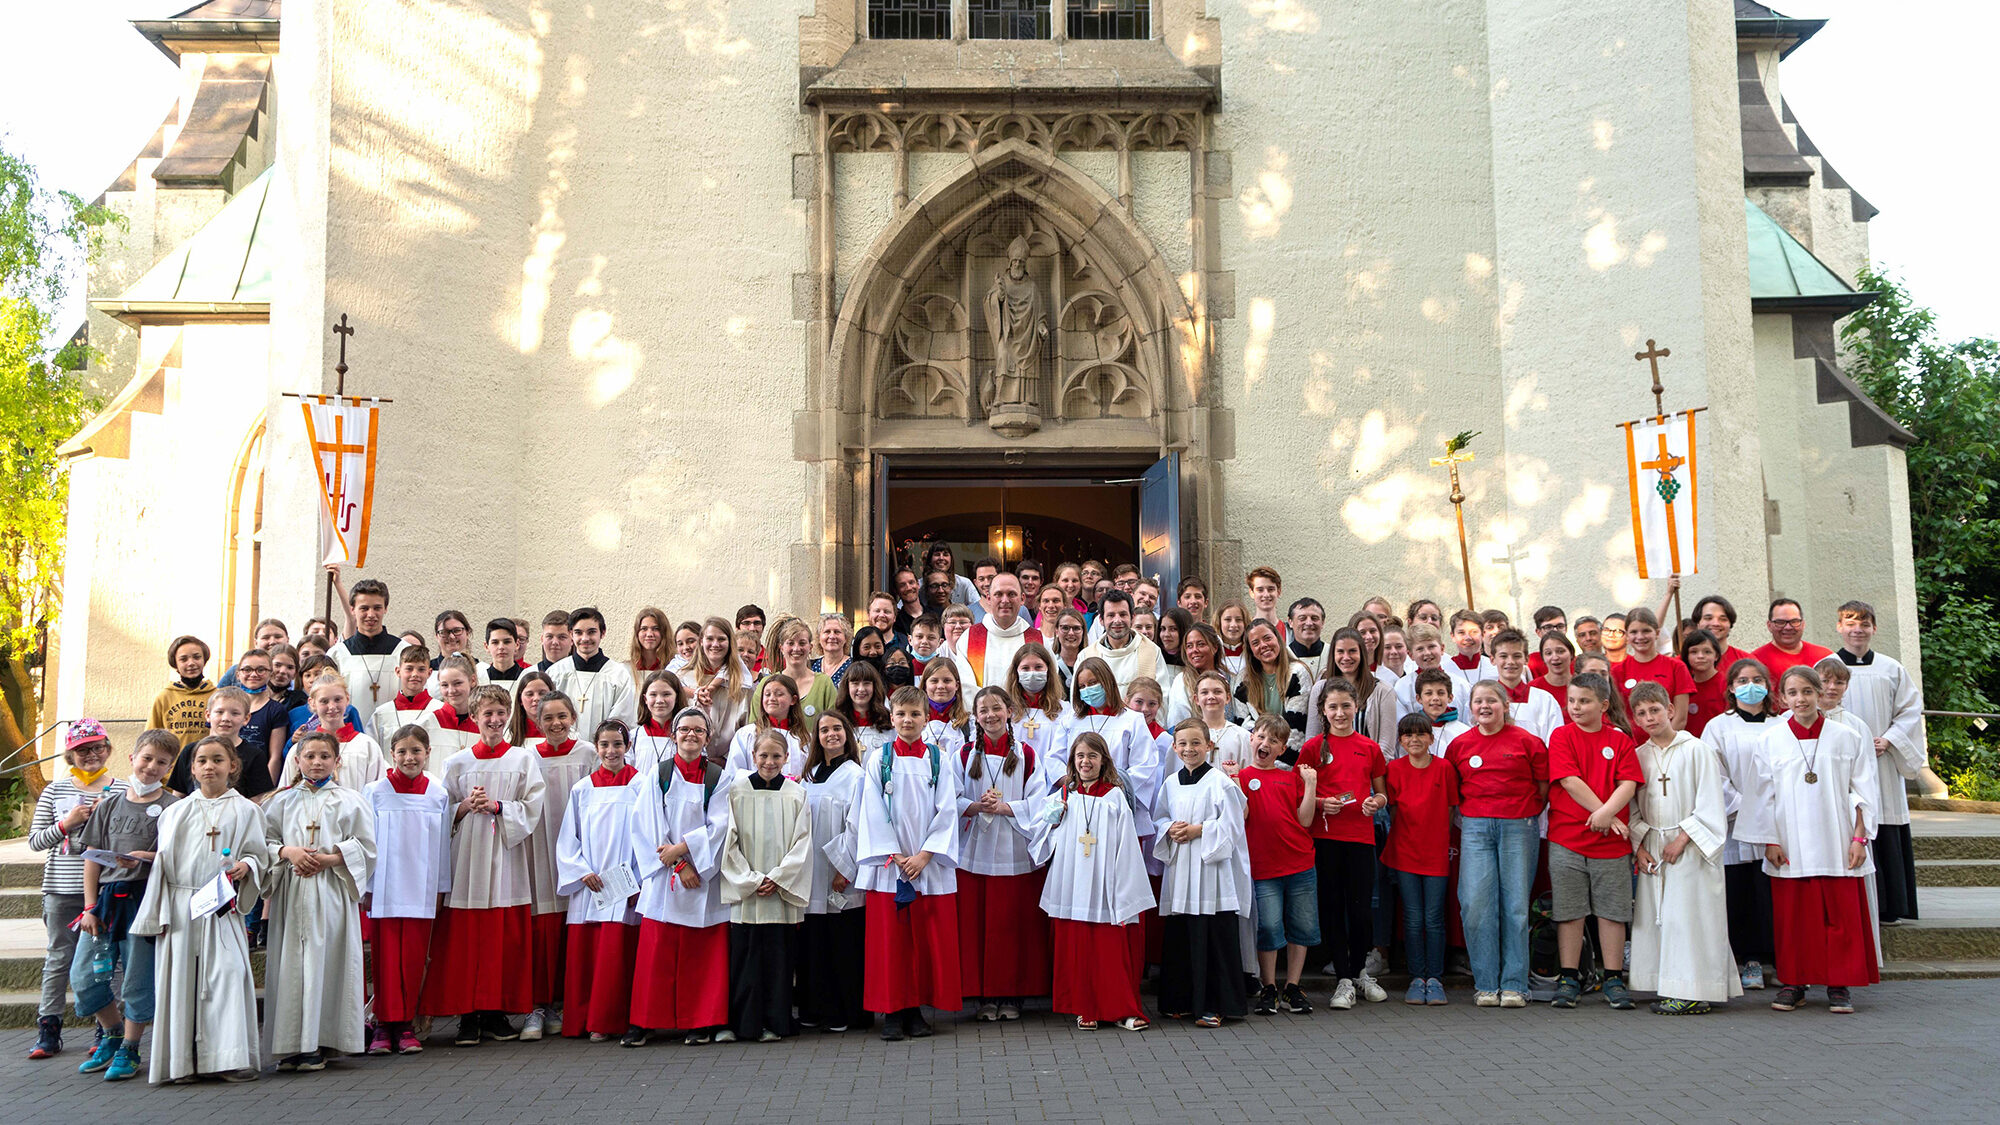 Mehr als 100 Ministrantinnen und Ministranten trafen sich in St. Liborius in Dortmund-Körne zum Dortmunder „Miniday“. Foto: Tobias Strunck / Kath. Stadtkirche Dortmund